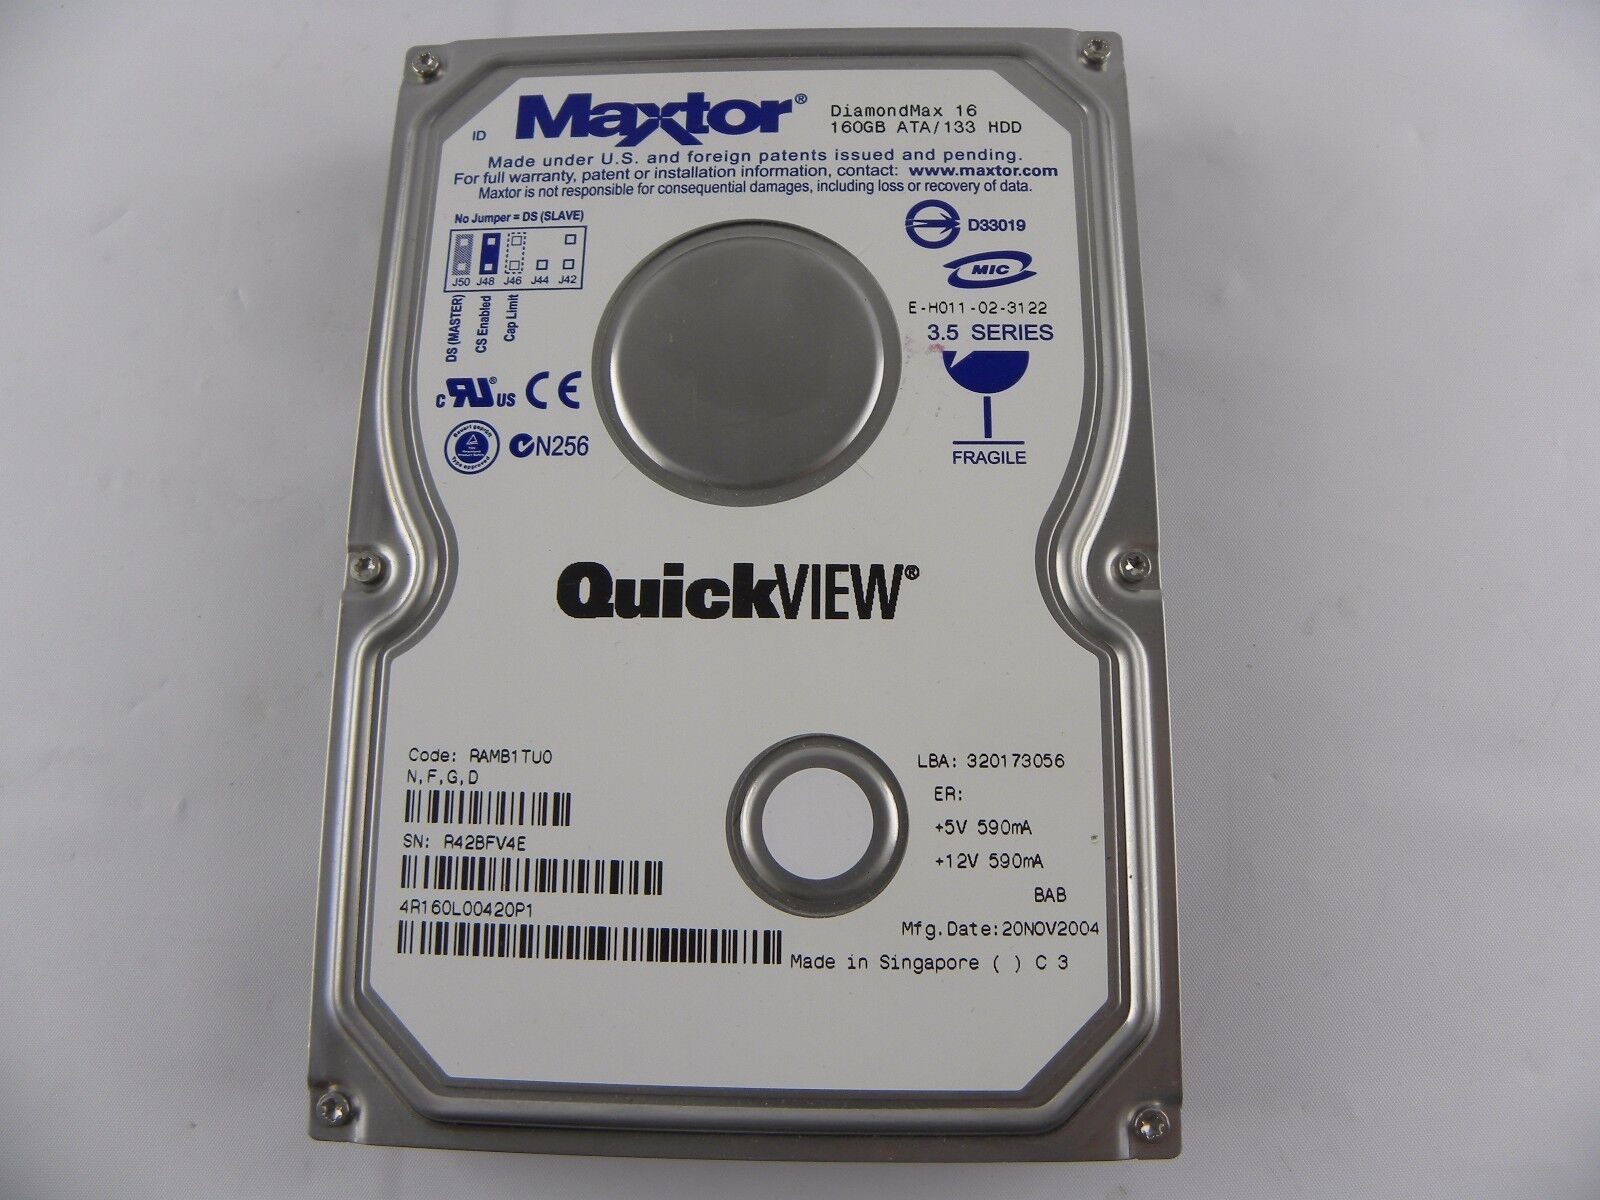 Maxtor 4R160L00420P1 160GB, 7200RPM, IDE Internal Hard Drive 